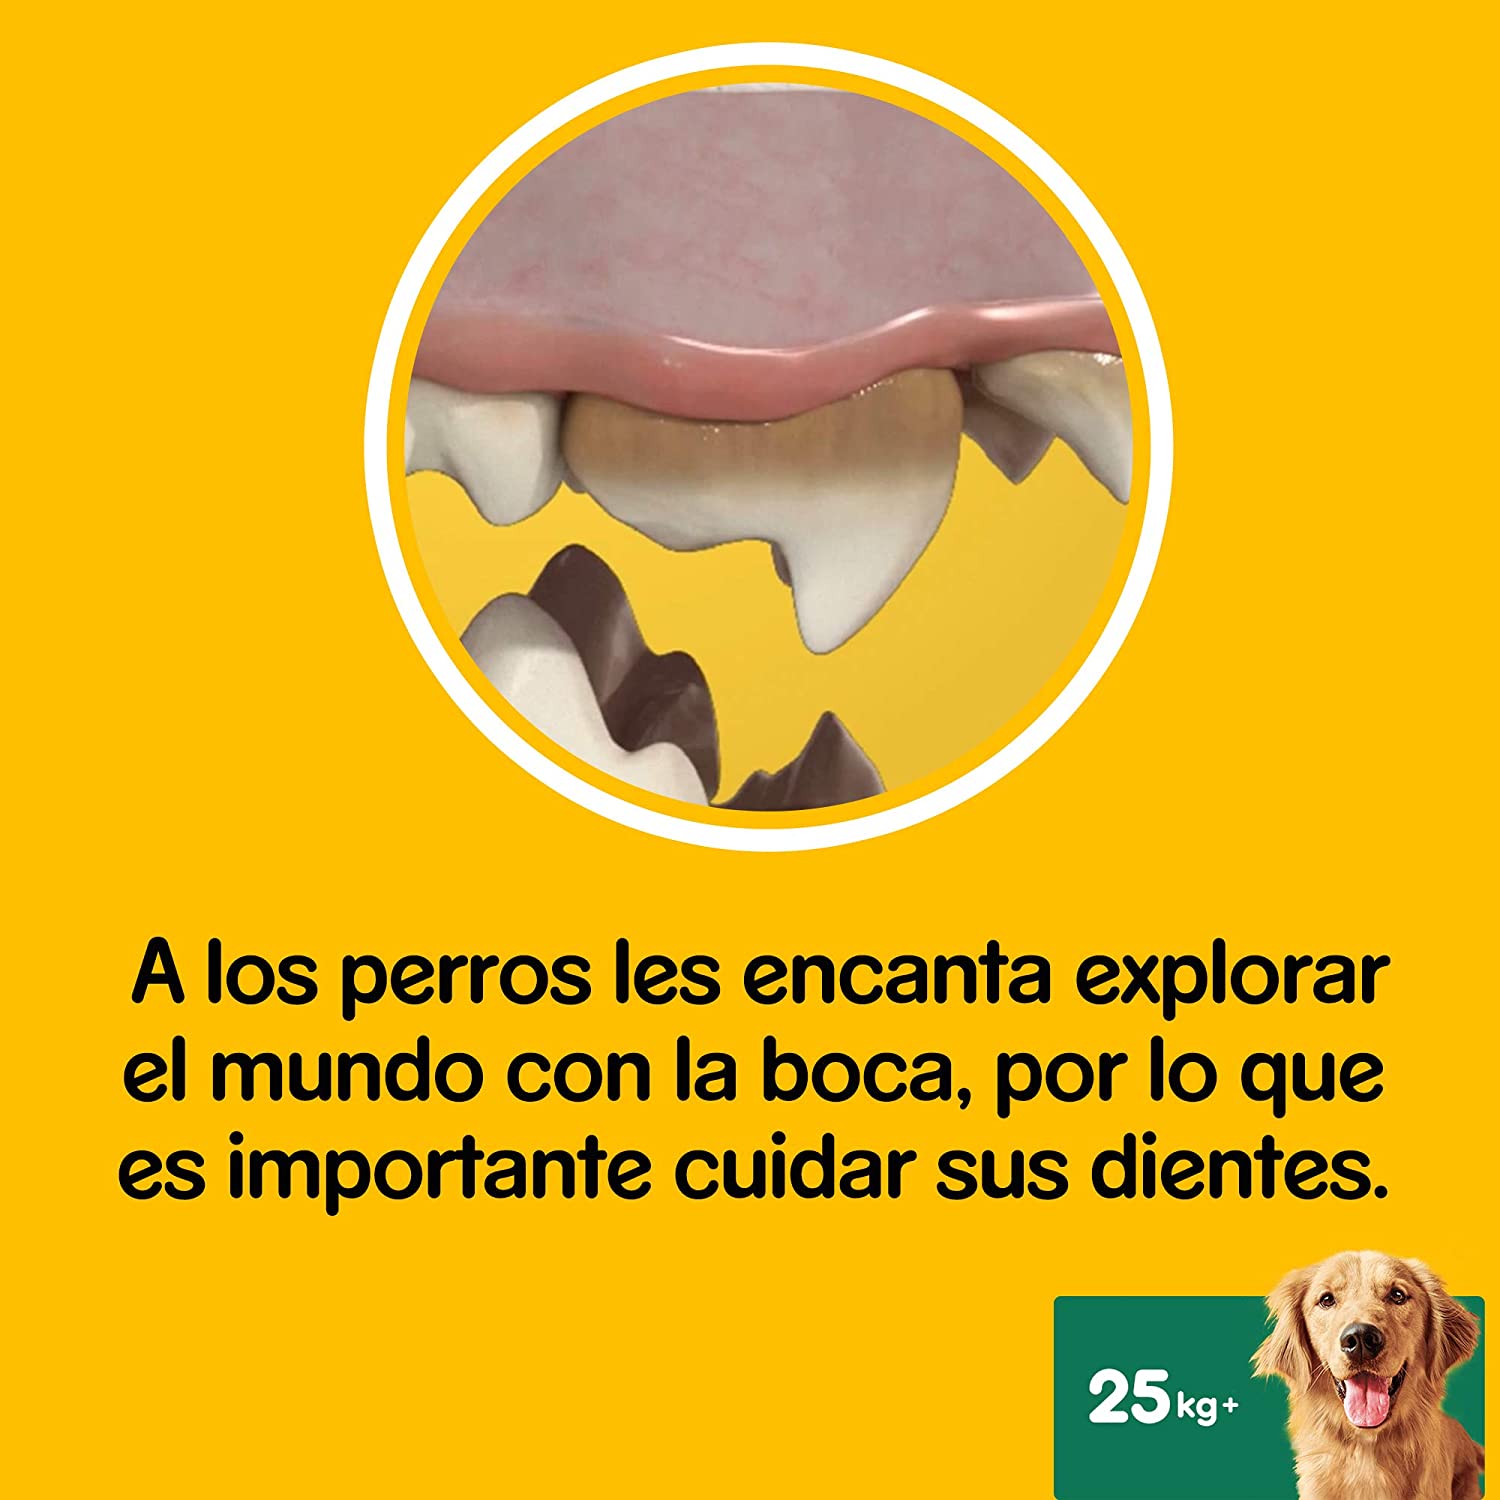  Pack de 7 Dentastix de uso diario para higiene oral para perros grandes | [Pack de 10] 